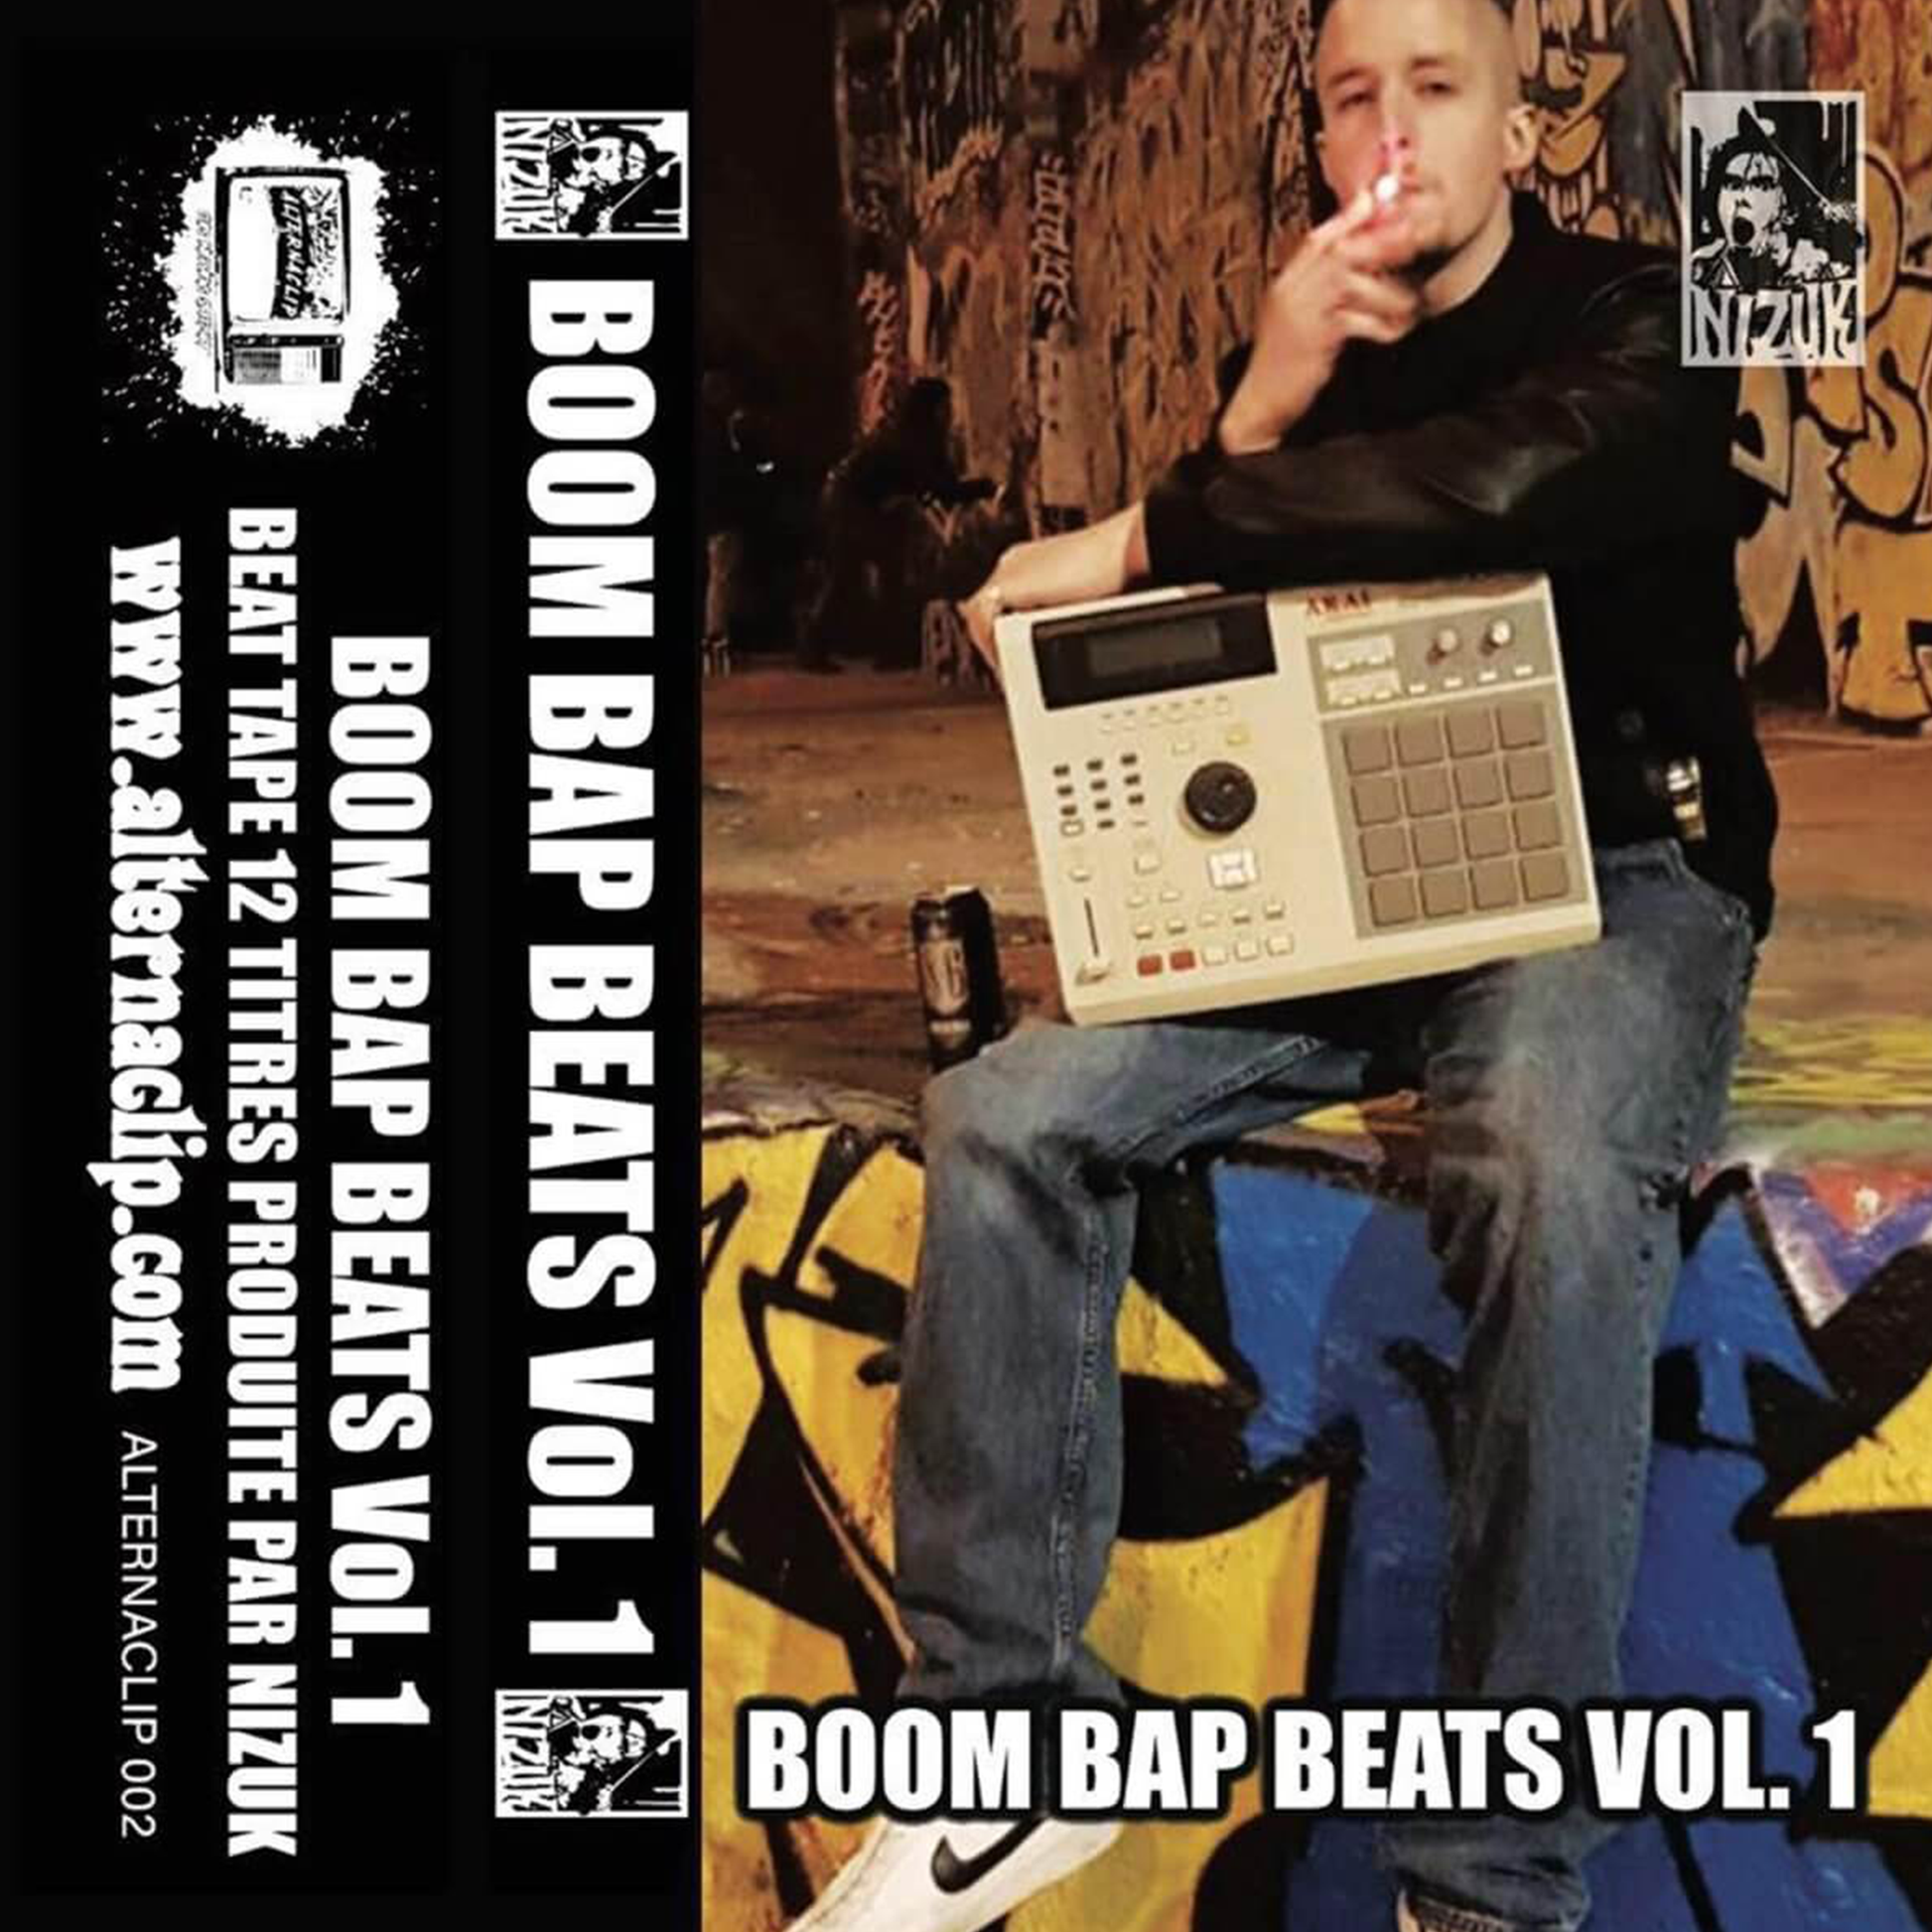 Beat Tape Hip Hop Old School du beatmaker Boom Bap Nizuk, Boom Bap Beats Vol.1 est un projet instrumental aux sonorités HipHop à l'ancienne et disponible au format K7 (cassette).